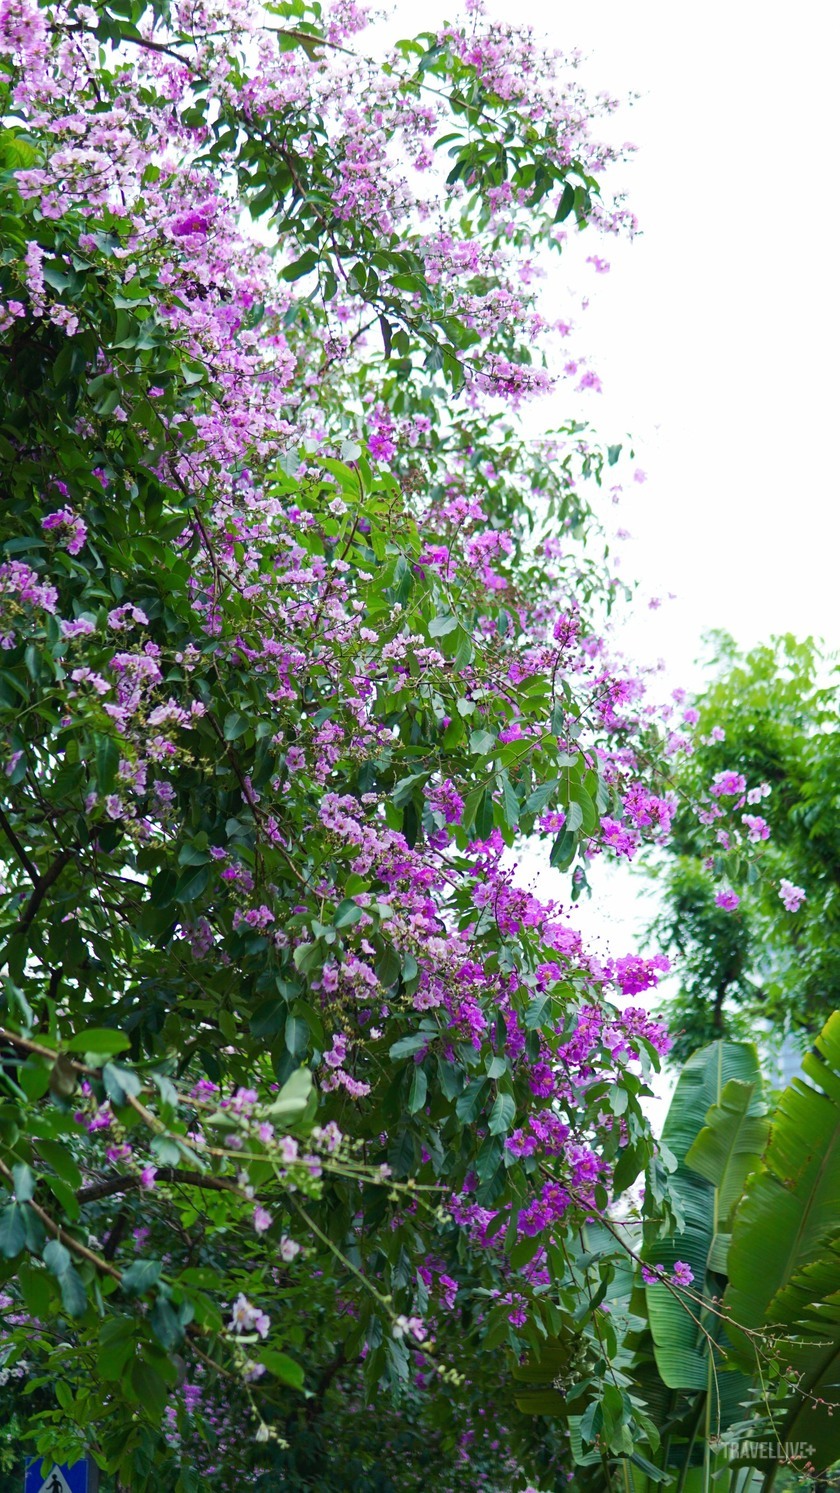 Hình ảnh những tán cây bằng lăng vươn cao, nở rộ từng chùm hoa tím biếc, tô điểm cho bức tranh mùa hạ thêm sức sống và lãng mạn